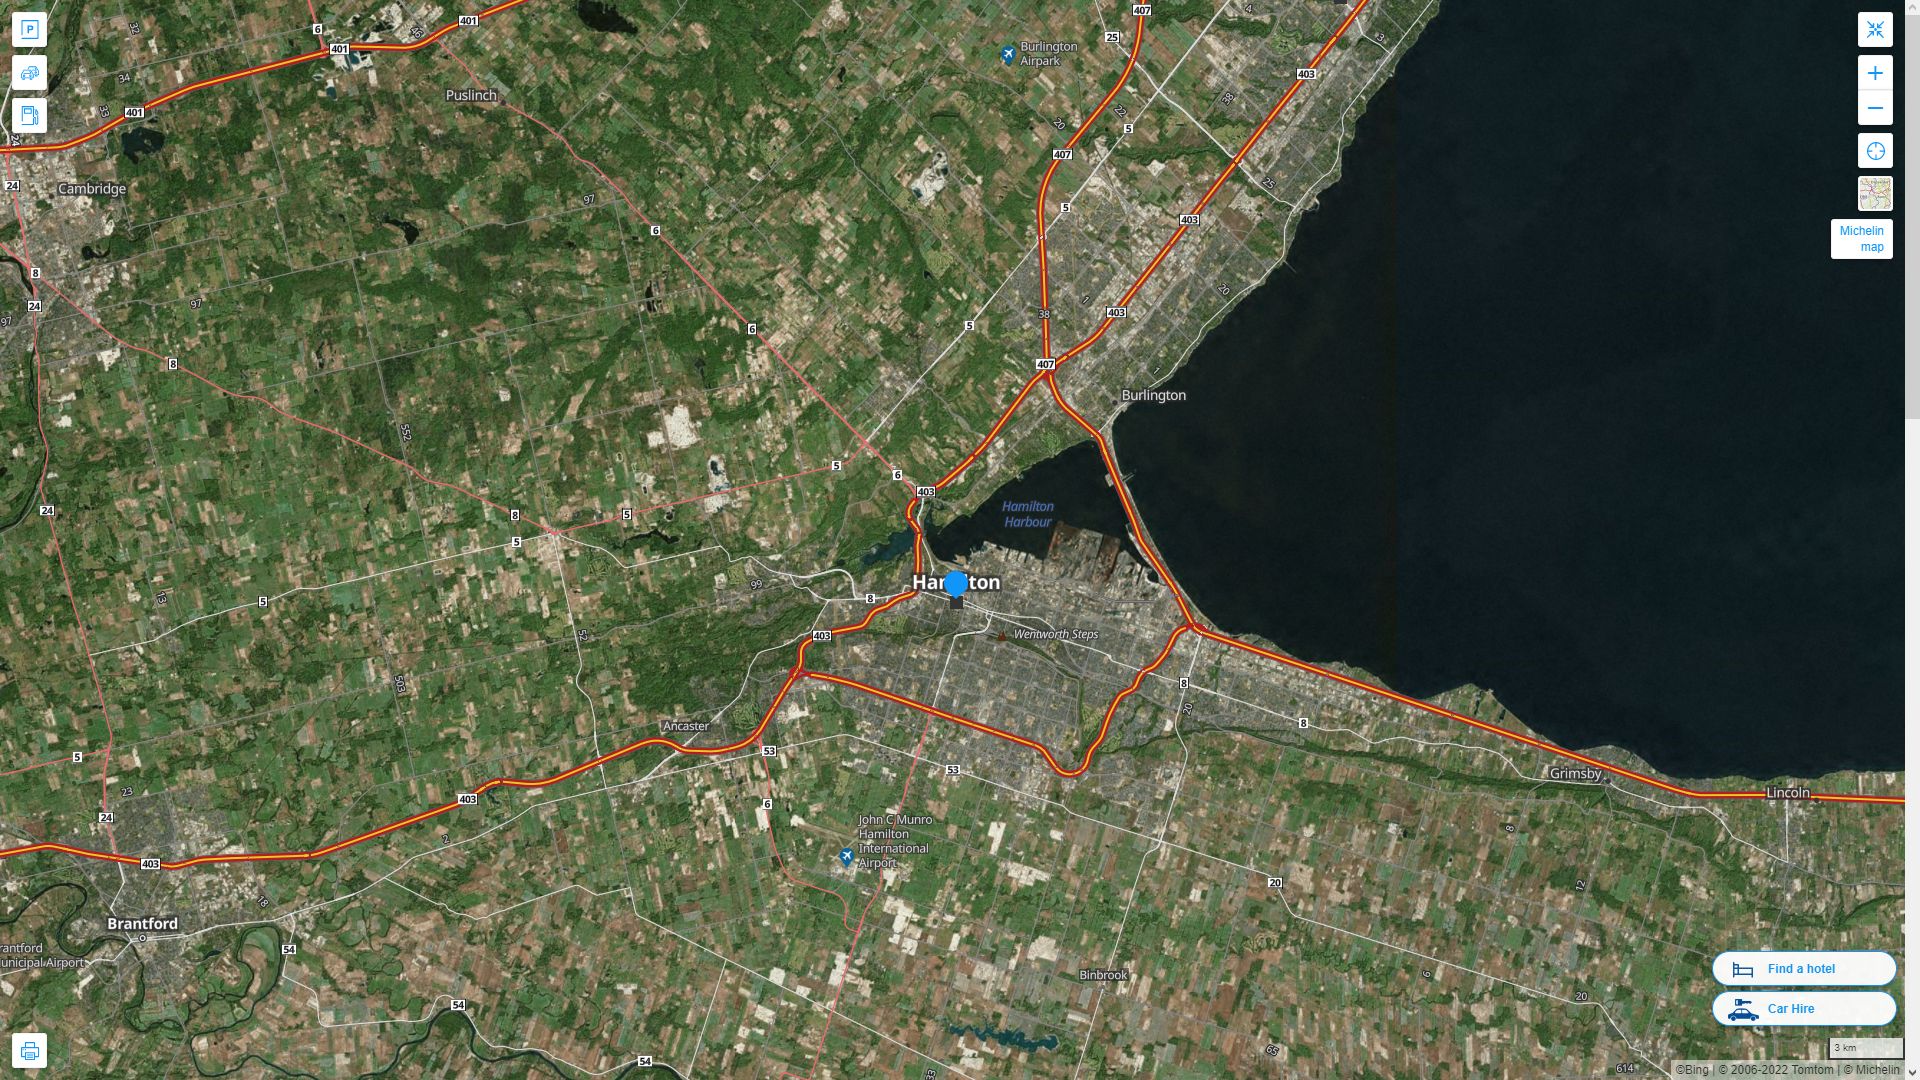 Hamilton Canada Autoroute et carte routiere avec vue satellite